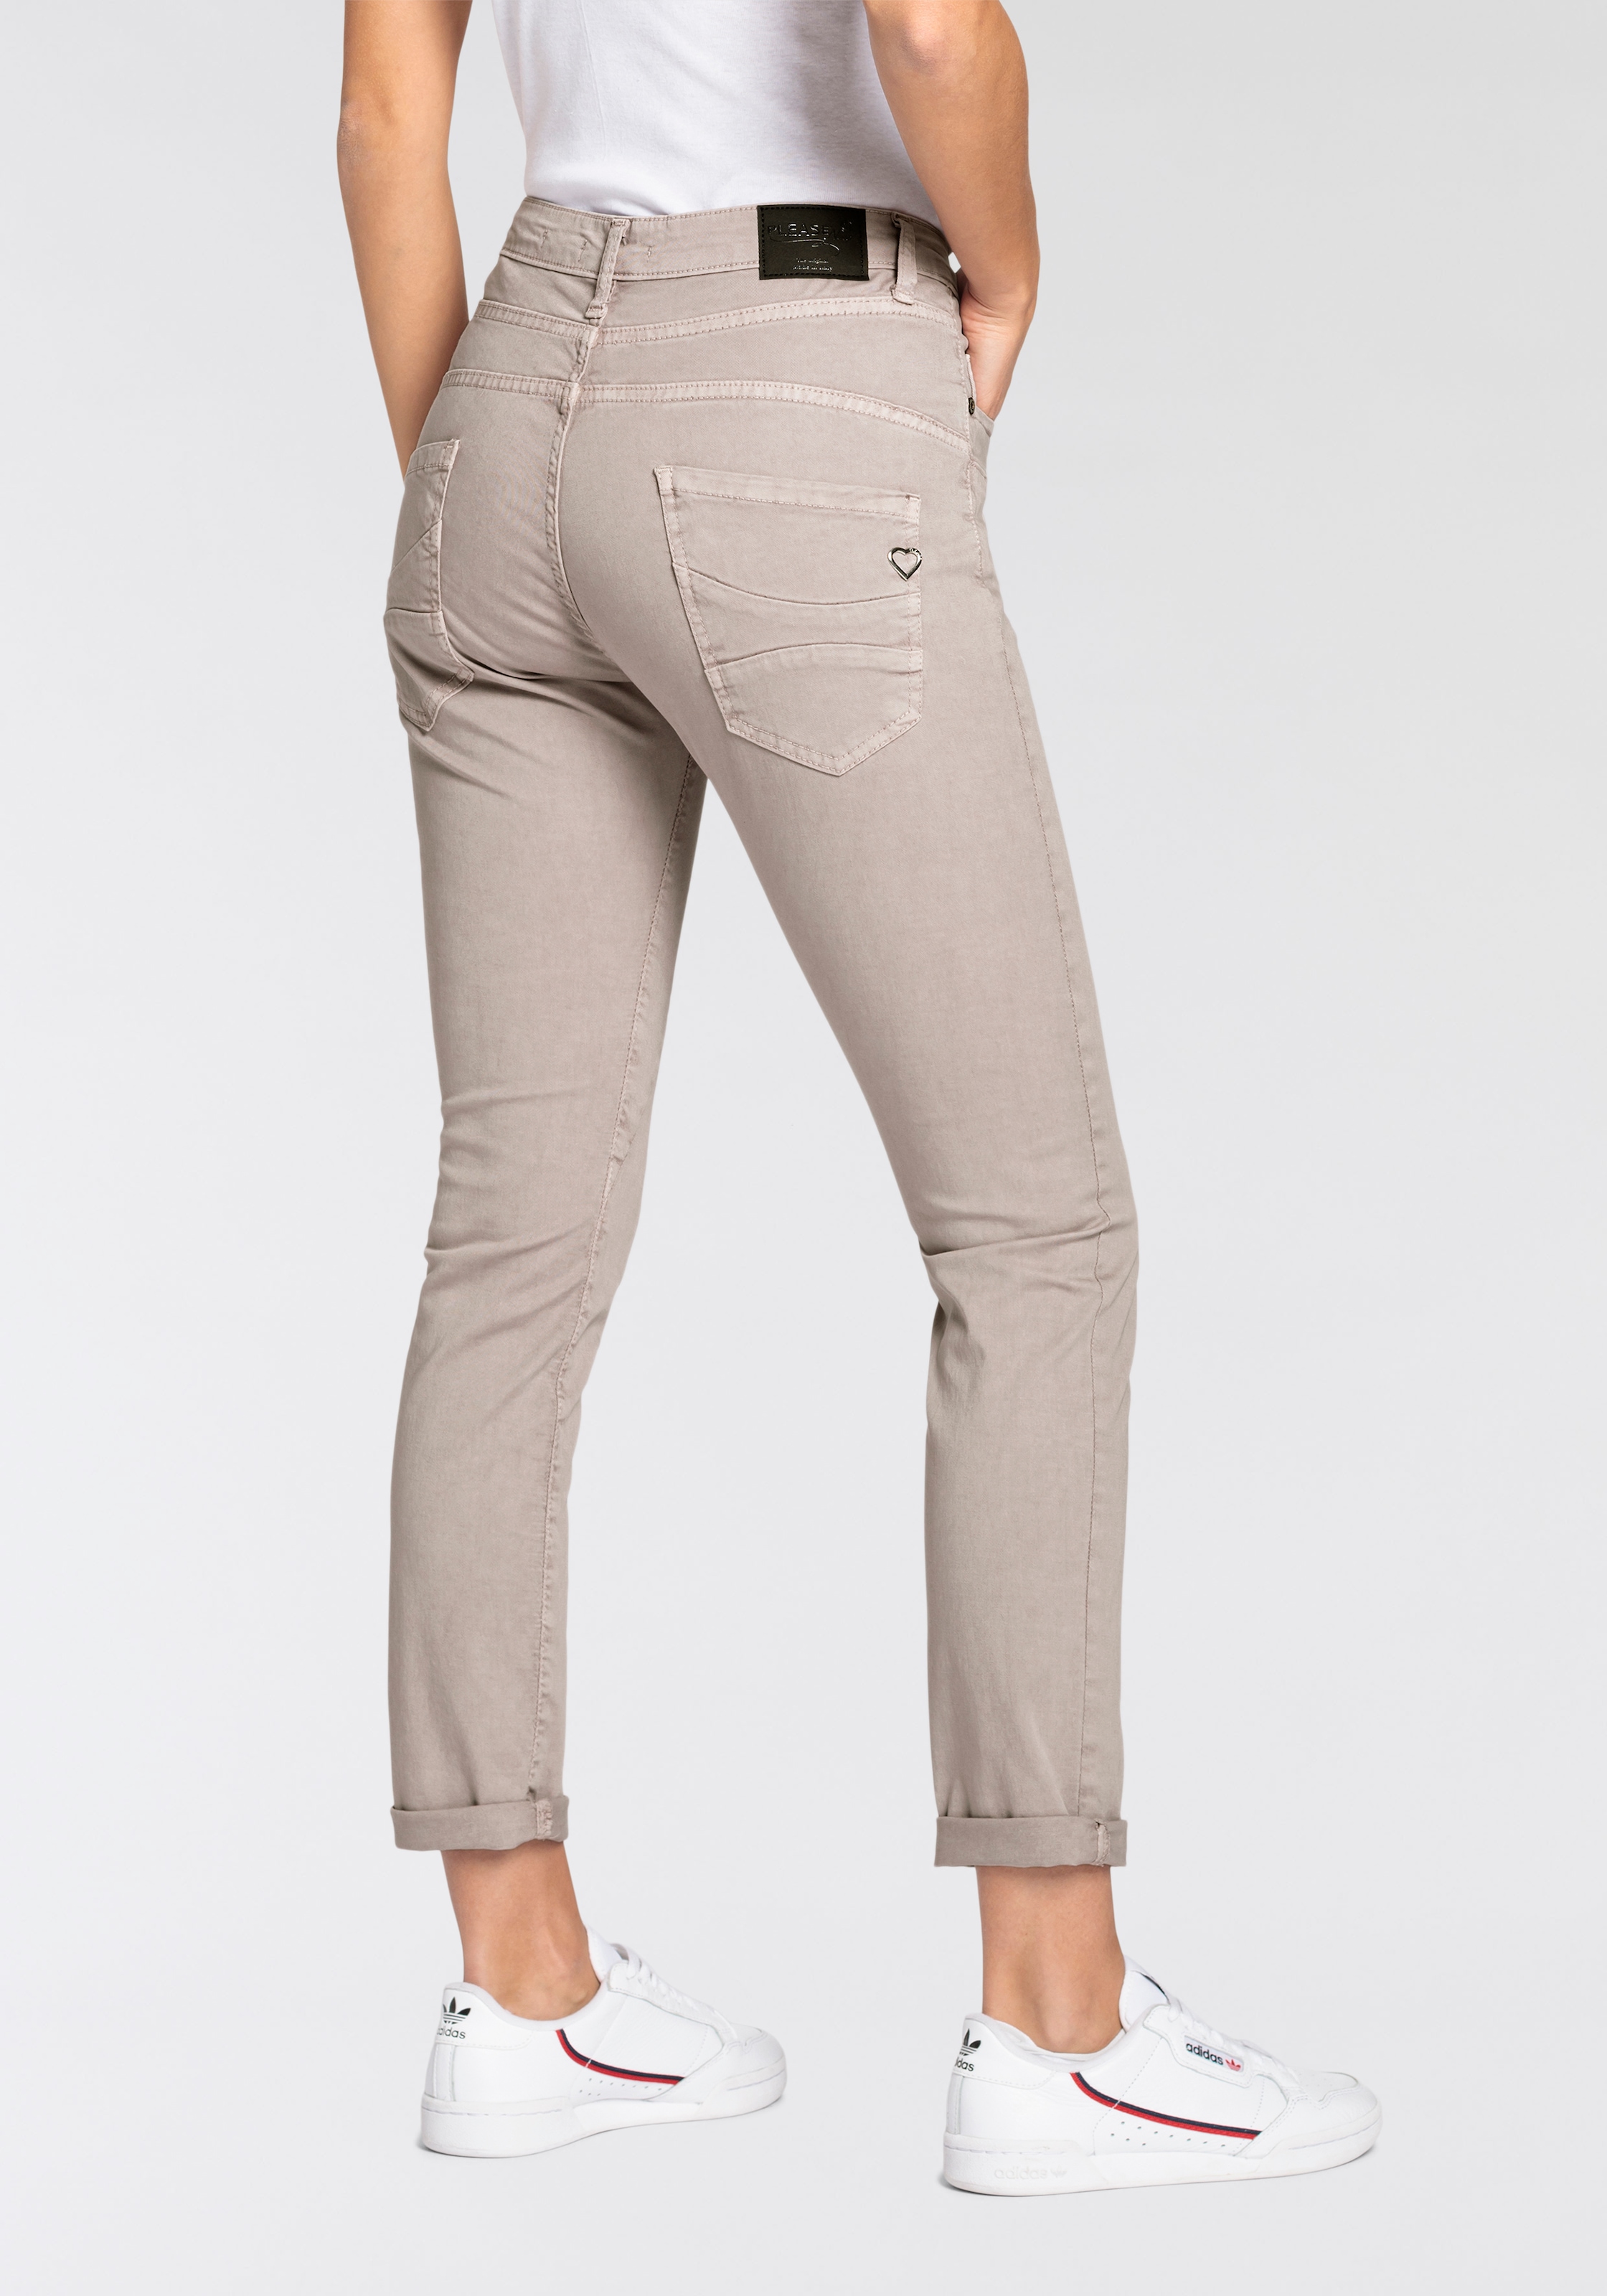 Please Jeans kaufen OTTO bei Mit Knöpfung Röhrenhose, online besonderer